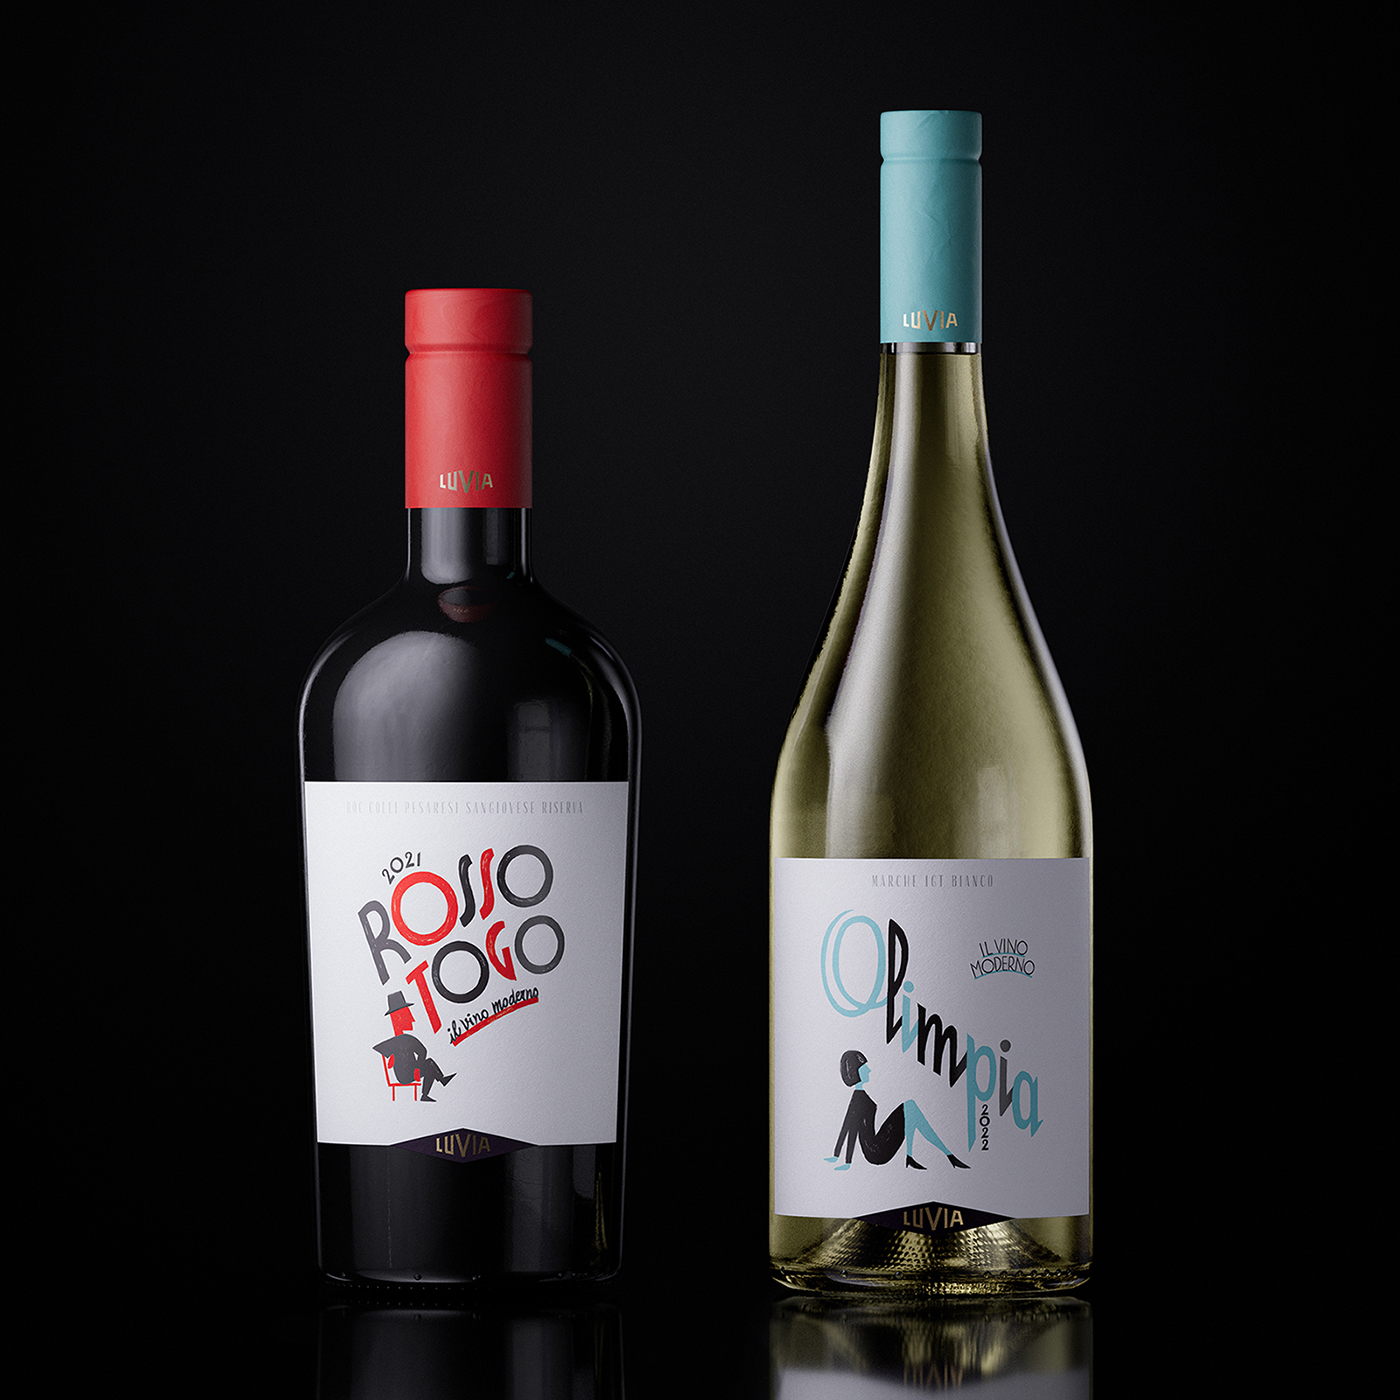 Andrea Castelletti Studio Creates Label Design for Rosso Togo and Olimpia Wine from Luvia Winery